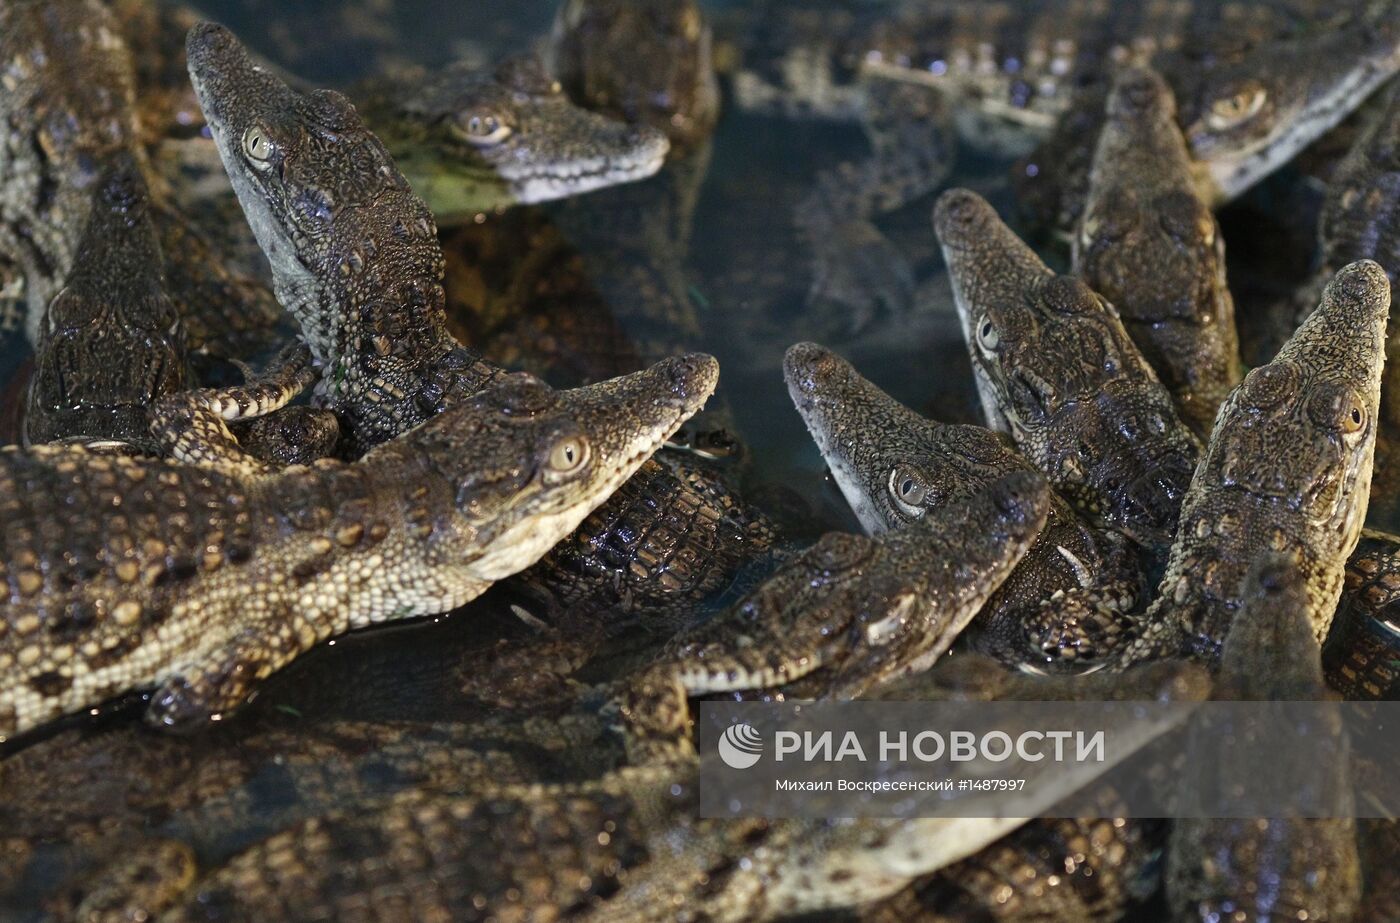 Открытие "Крокодиловой фермы" на ВВЦ в Москве